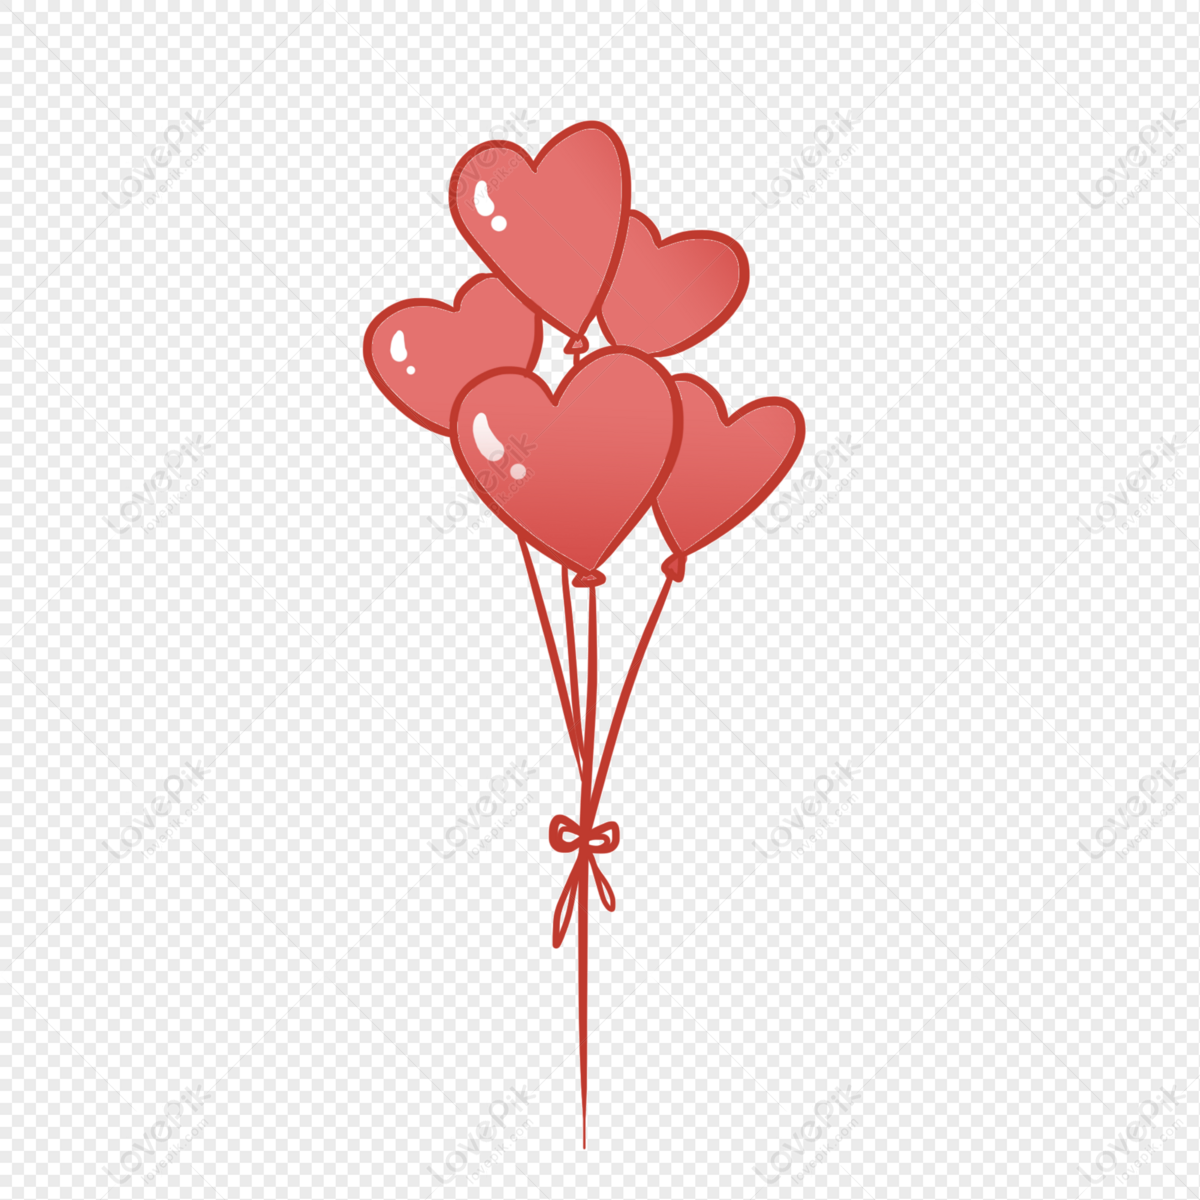 Photo de Ballon Rouge,ballons De Fête, élément de ballon, ballon de dessin  animé, ballons clipart Graphique images free download - Lovepik